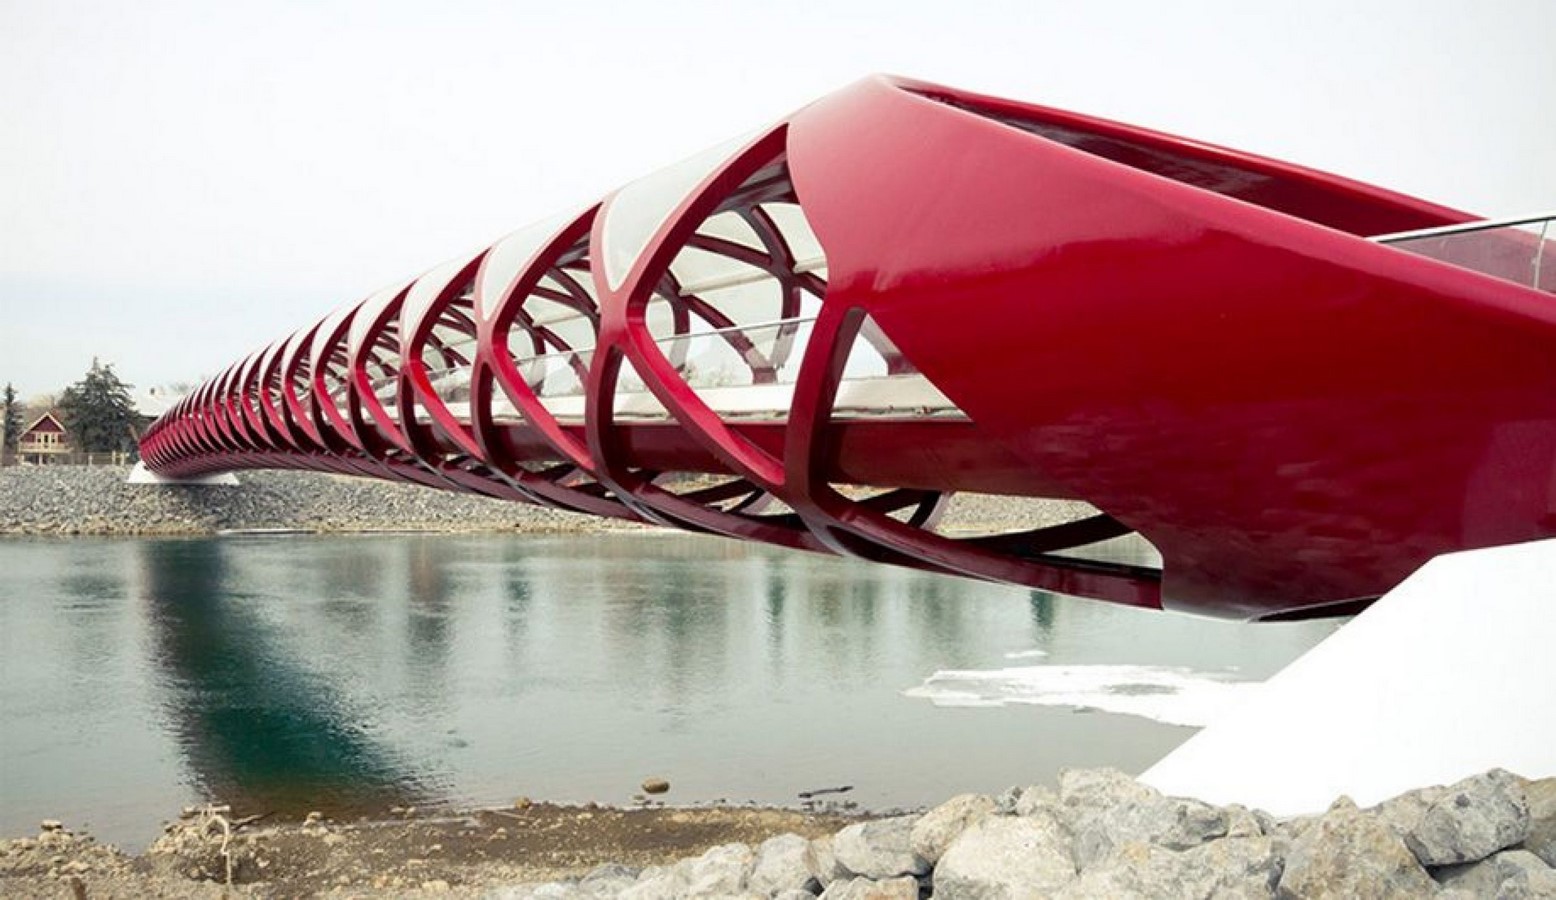  Мост мир Сантьяго Калатравы в канадском Калгари.